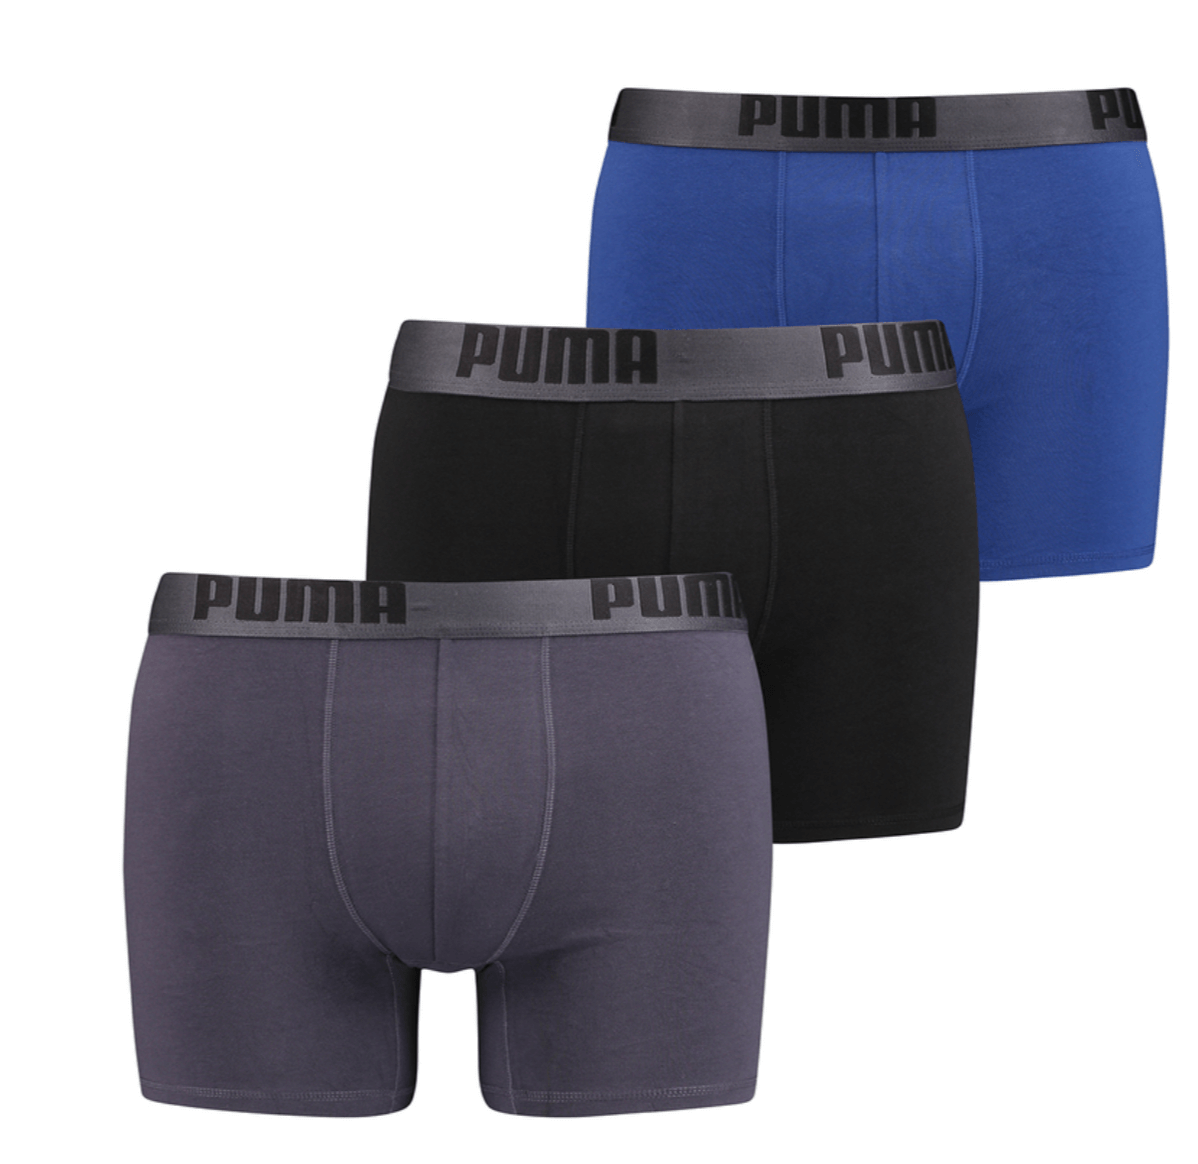 PUMA Men's 3 Pack Cotton Stretch Boxer Brief Underwear - Blue/Black/Grey